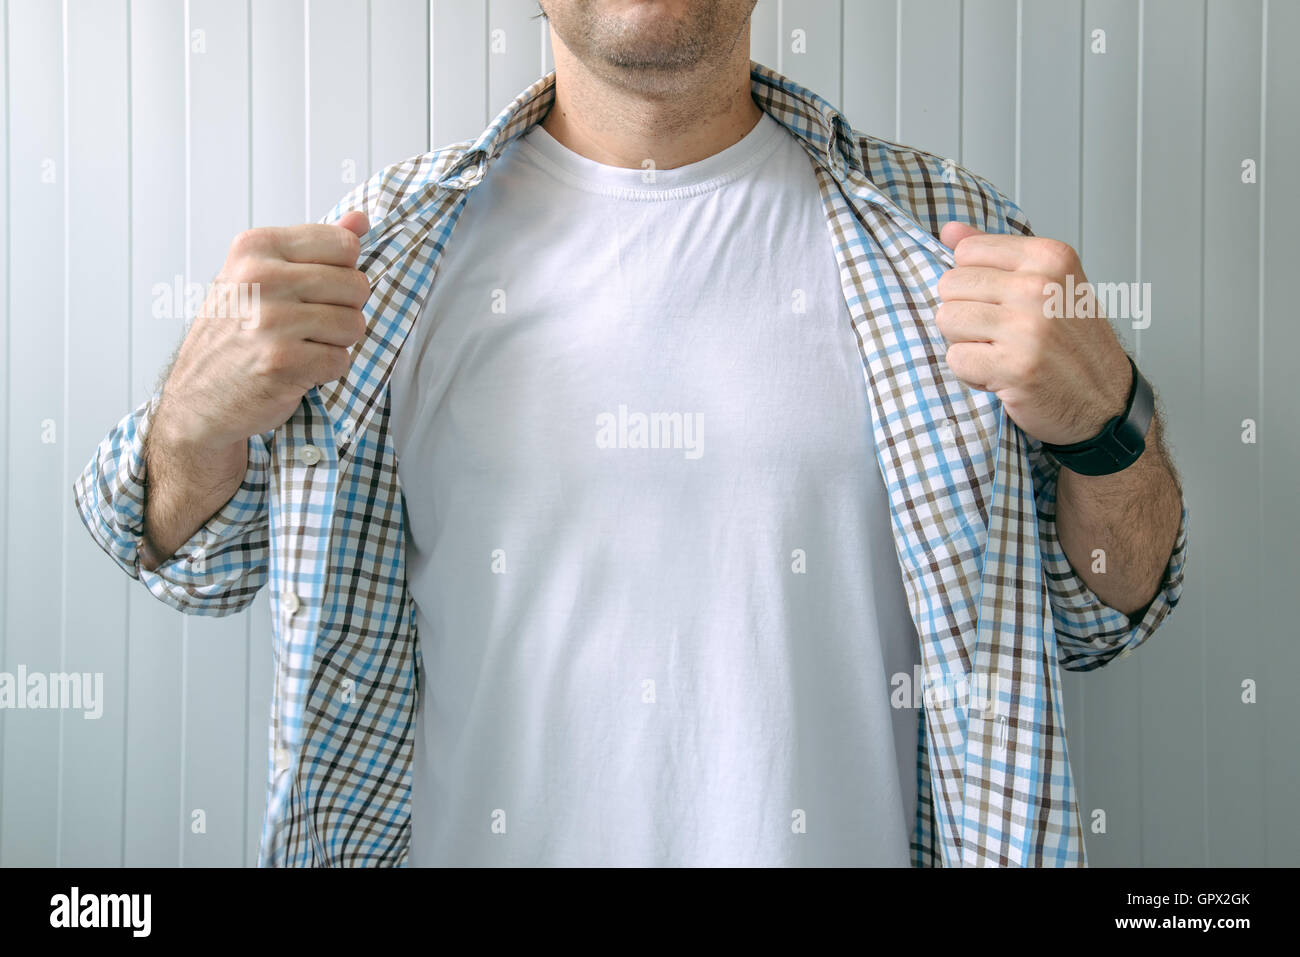 Guy rivelando t-shirt bianco come copia di spazio per mock up graphic design Foto Stock